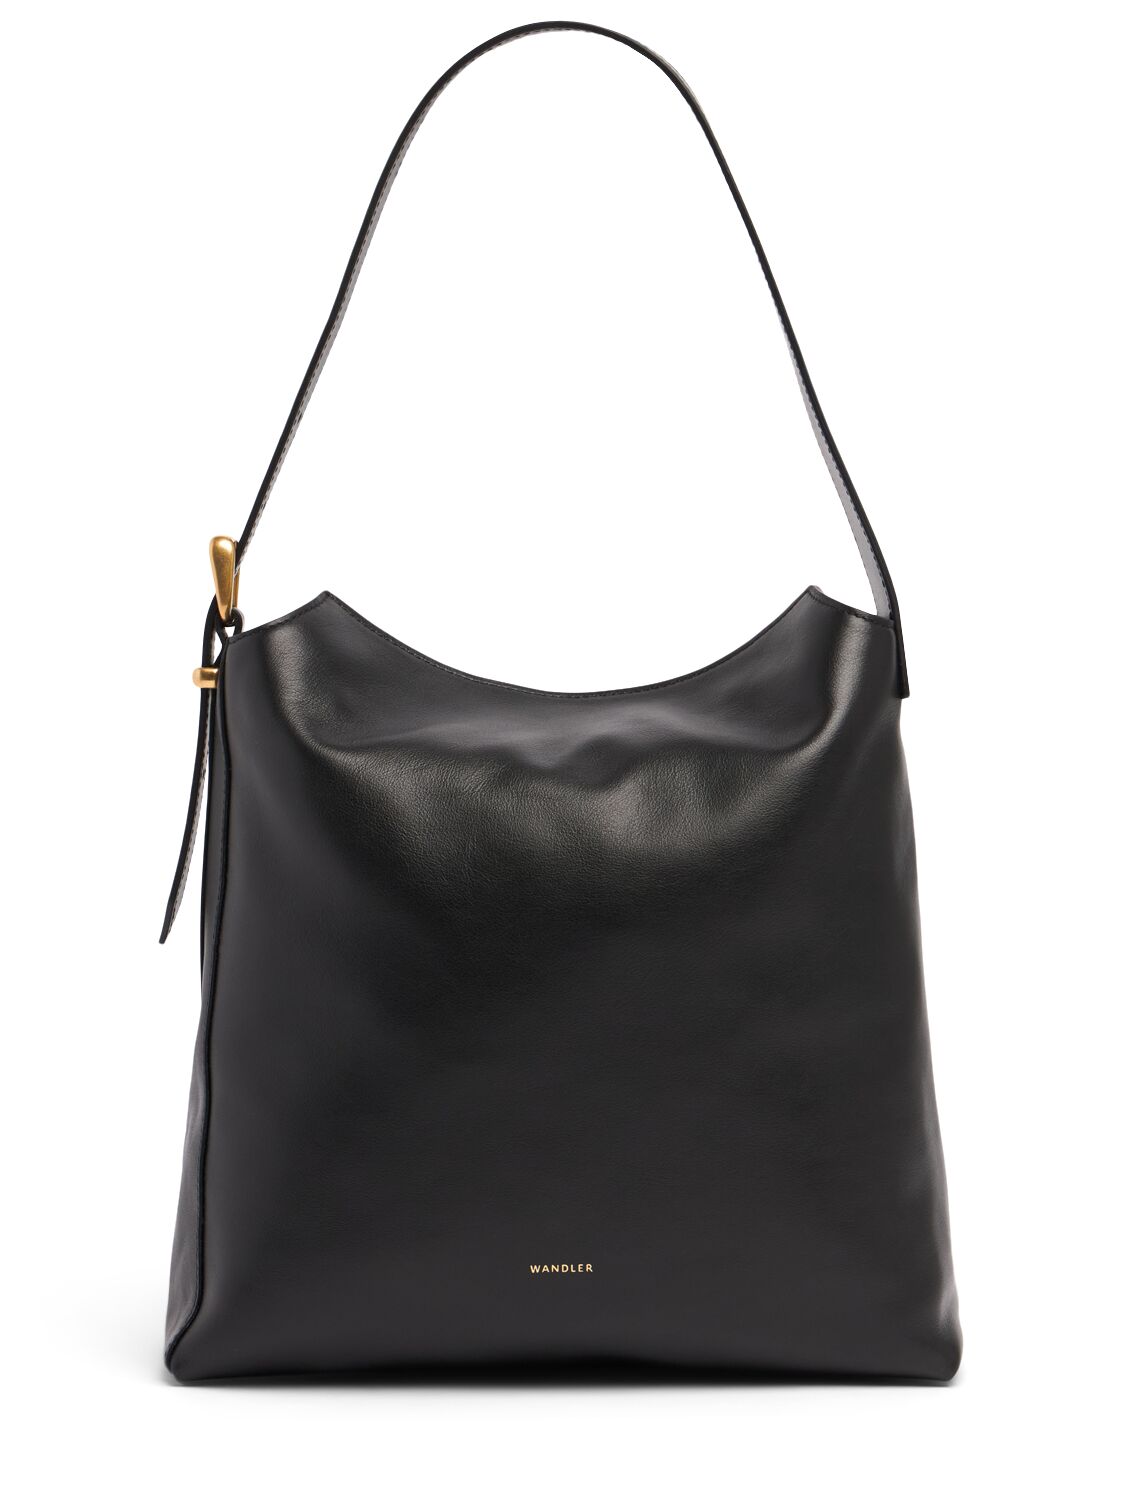 Wandler Marli Leather Shoulder Bag In Black